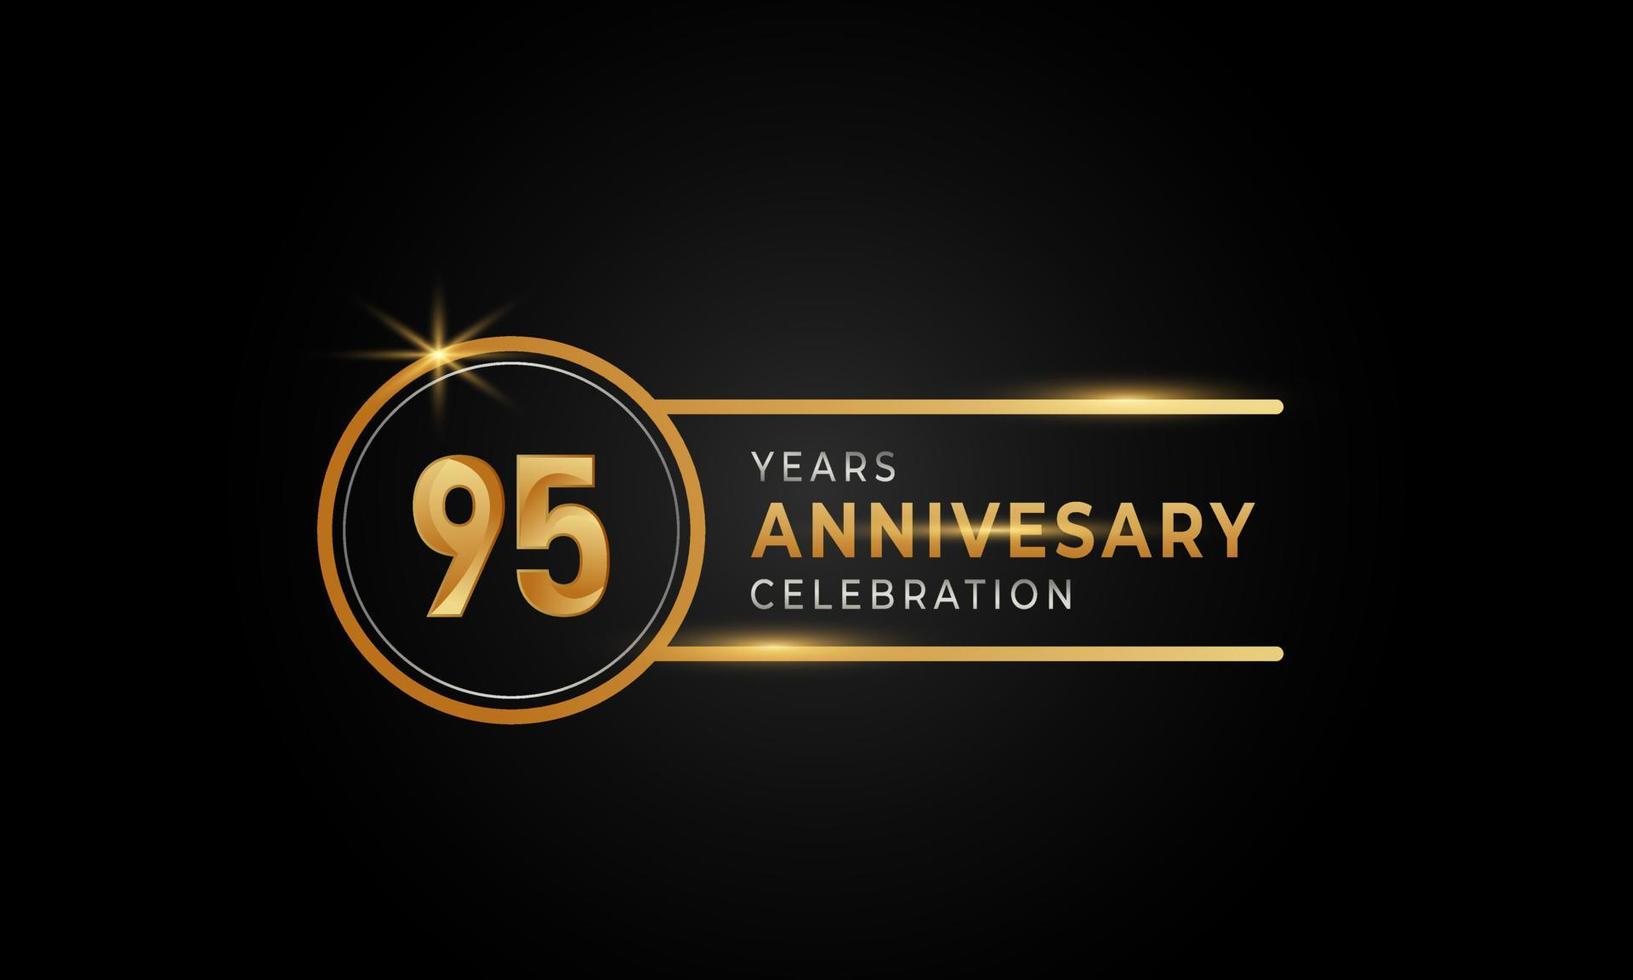 Célébration du 95e anniversaire couleur or et argent avec anneau circulaire pour événement de célébration, mariage, carte de voeux et invitation isolée sur fond noir vecteur